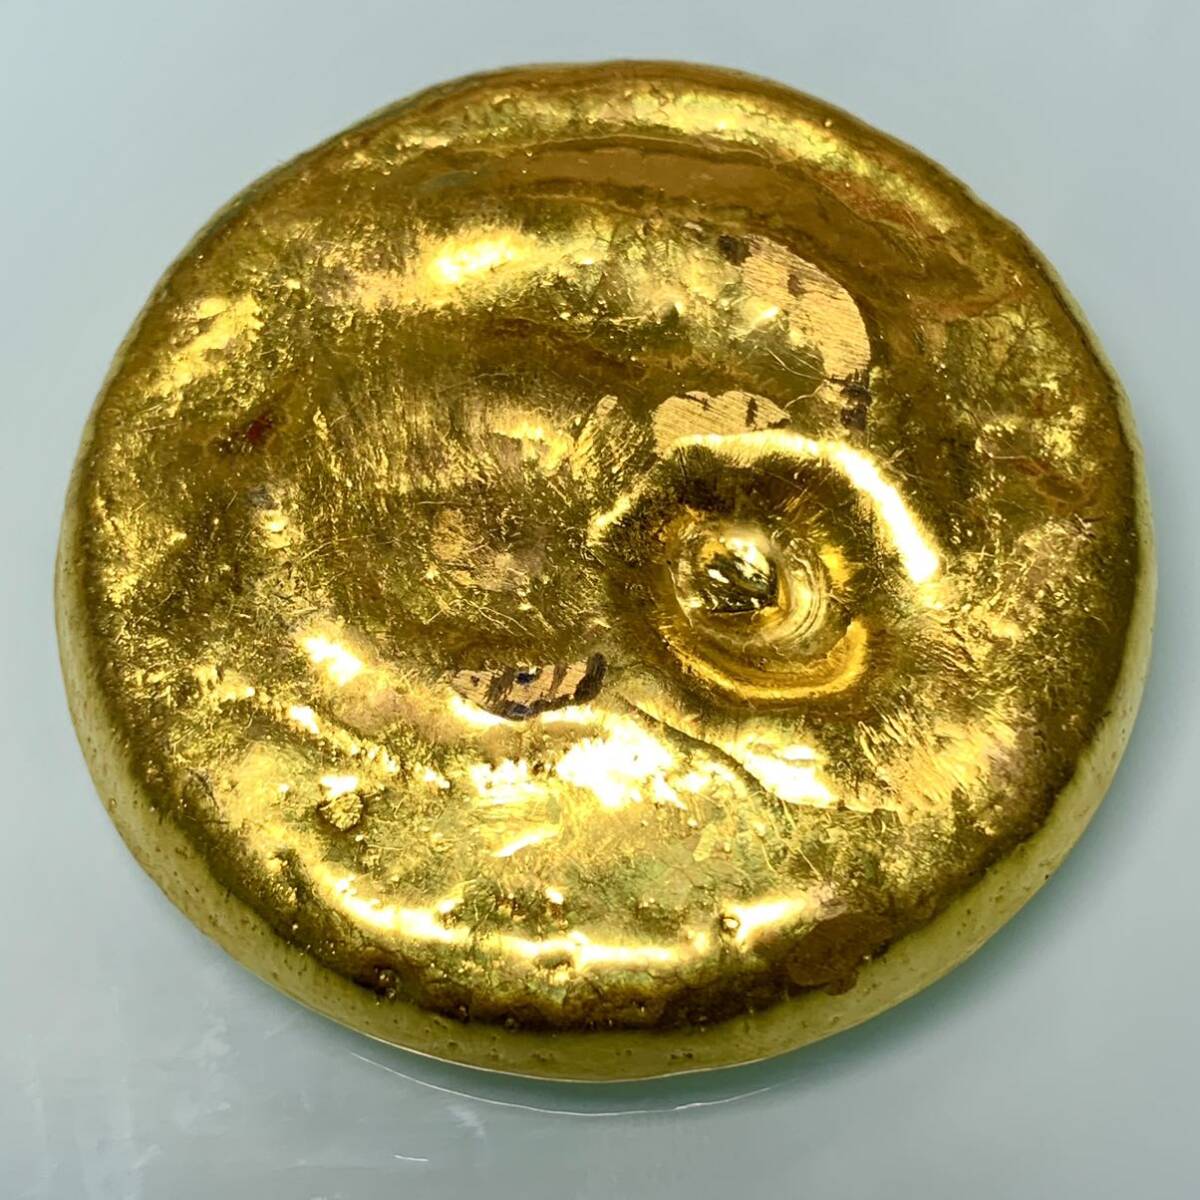  старая монета золотая монета подкова золотой старая монета счастливый случай для . удача в деньгах энергия .... золотой изначальный . интерьер украшение 